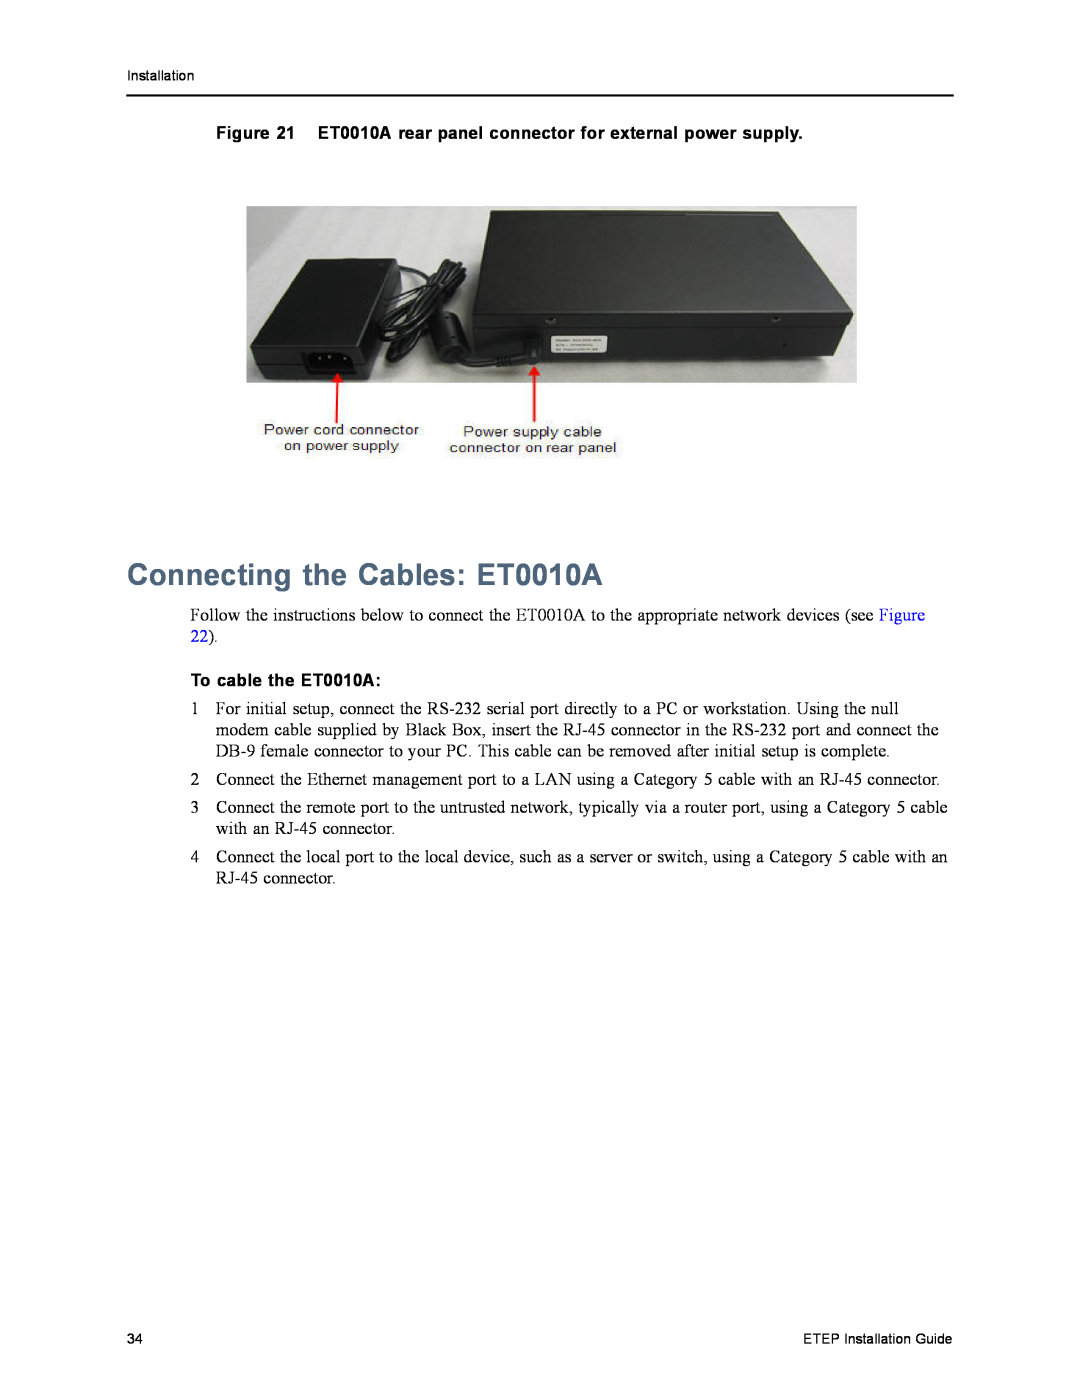 Black Box EncrypTight Enforcement Point (ETEP), ET1000A, ET0100A manual Connecting the Cables ET0010A, To cable the ET0010A 